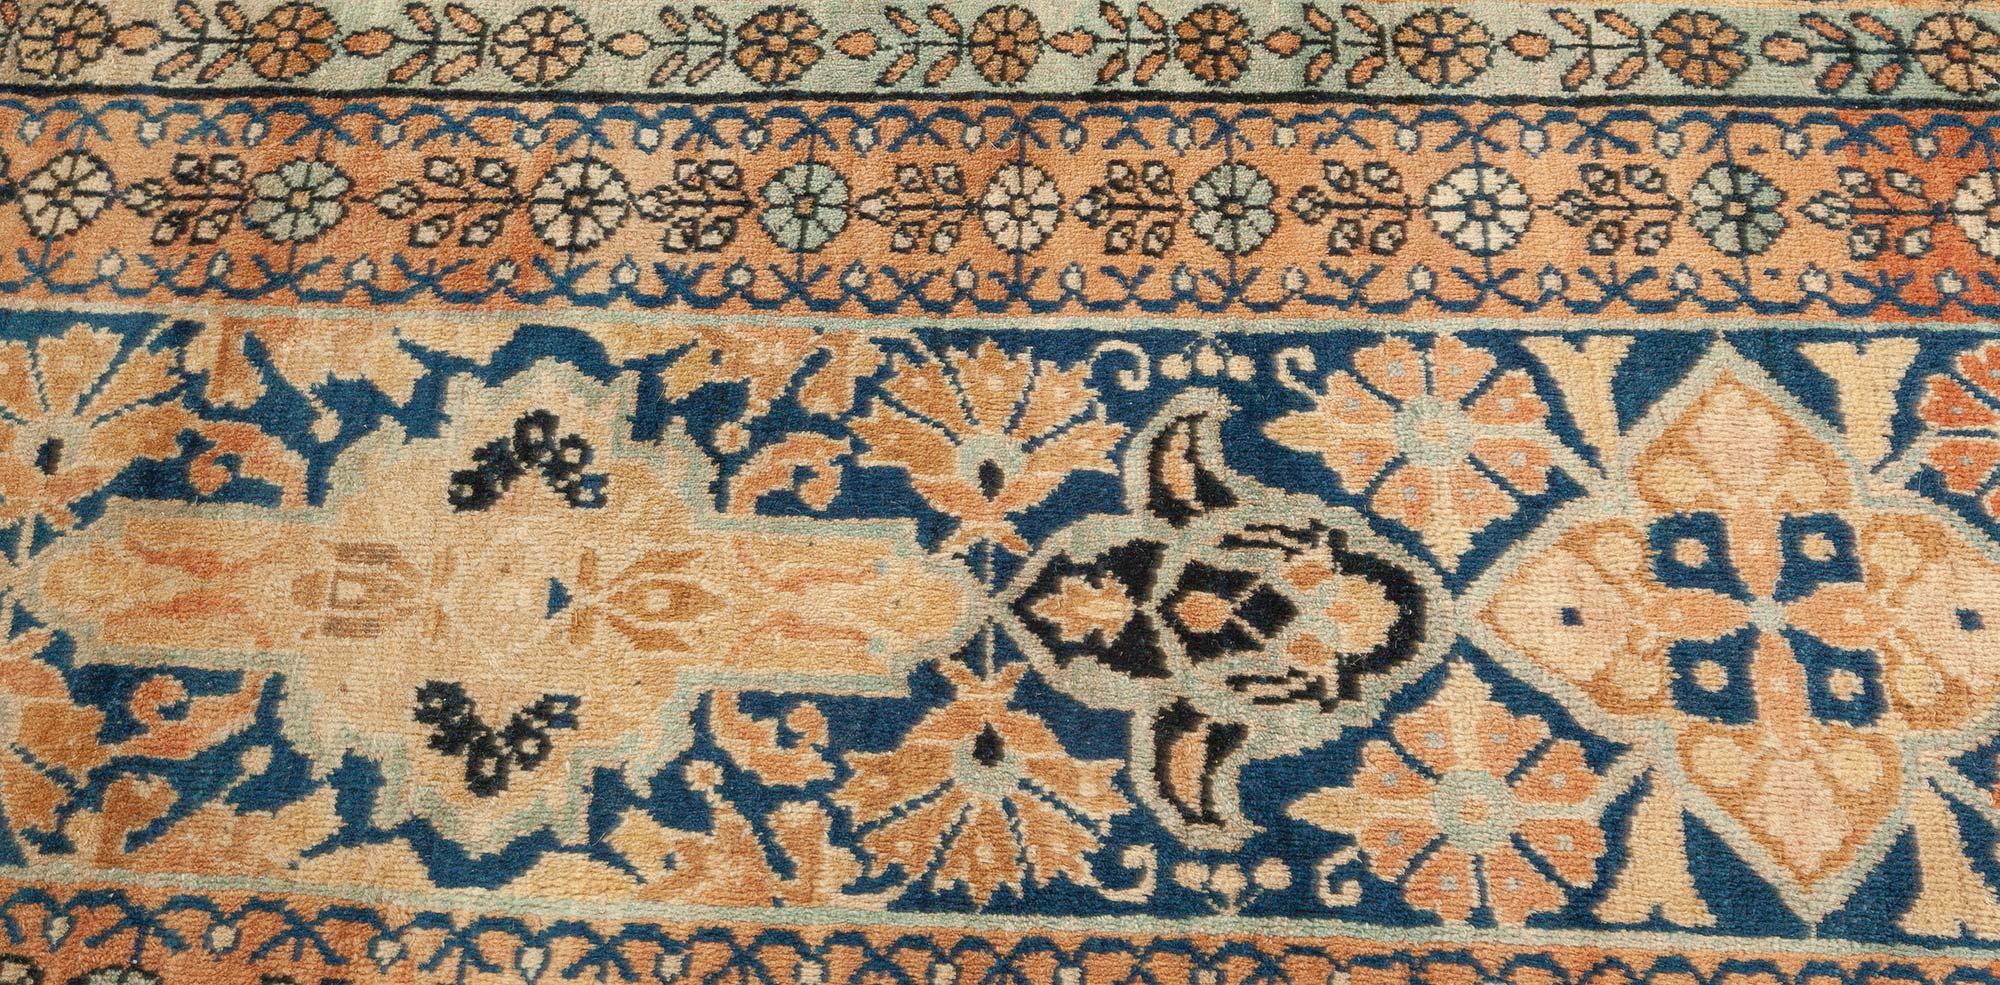 Authentique tapis persan en laine Kirman fait à la main
Taille : 11'7